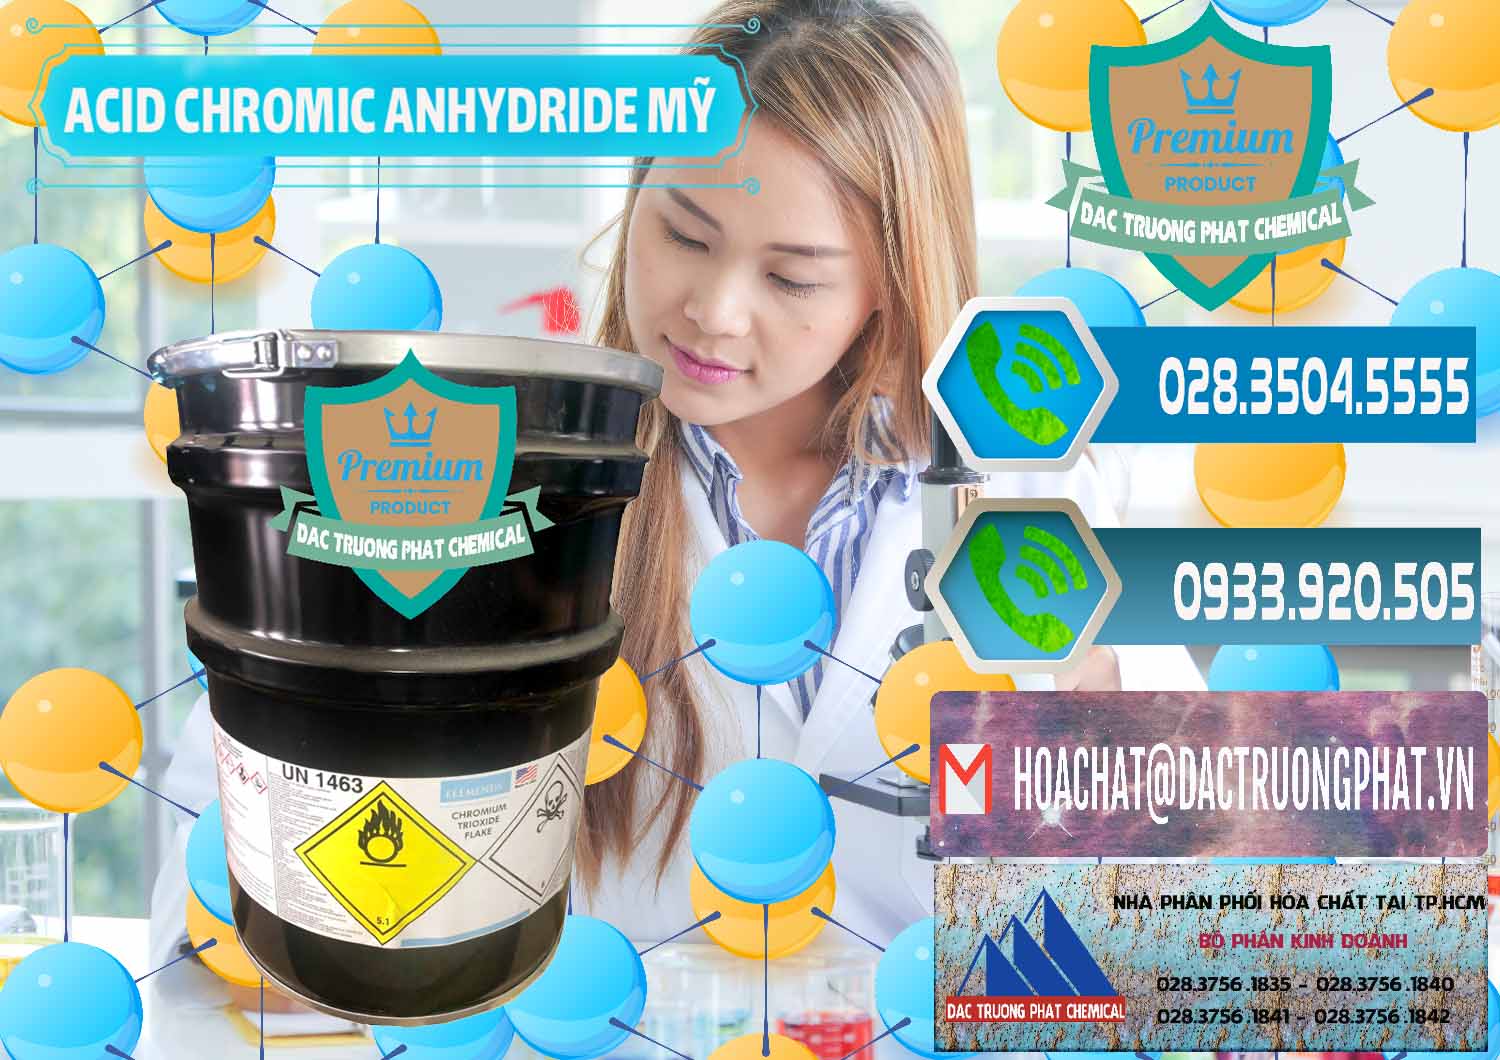 Công ty chuyên bán _ phân phối Acid Chromic Anhydride - Cromic CRO3 USA Mỹ - 0364 - Công ty chuyên bán - cung cấp hóa chất tại TP.HCM - congtyhoachat.net